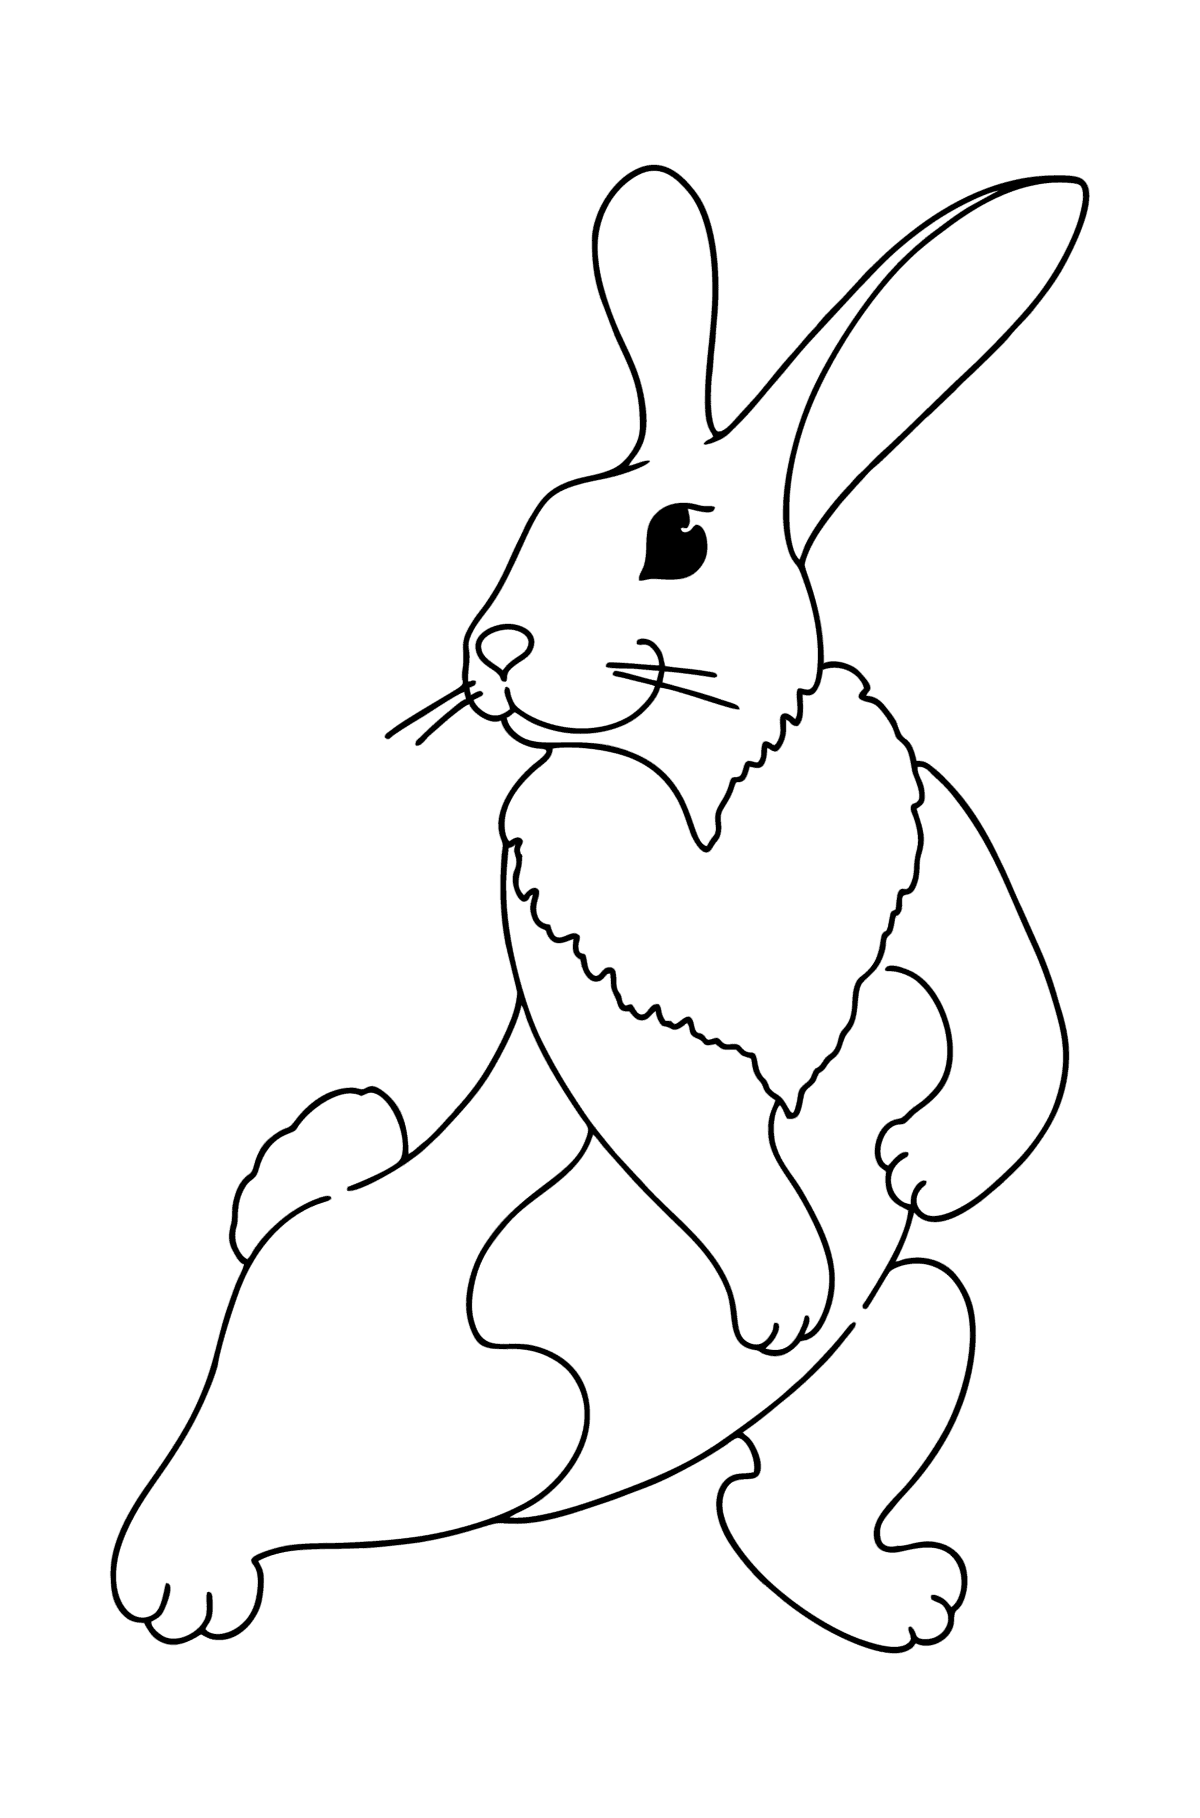 Tegning til fargelegging leken kanin - Tegninger til fargelegging for barn